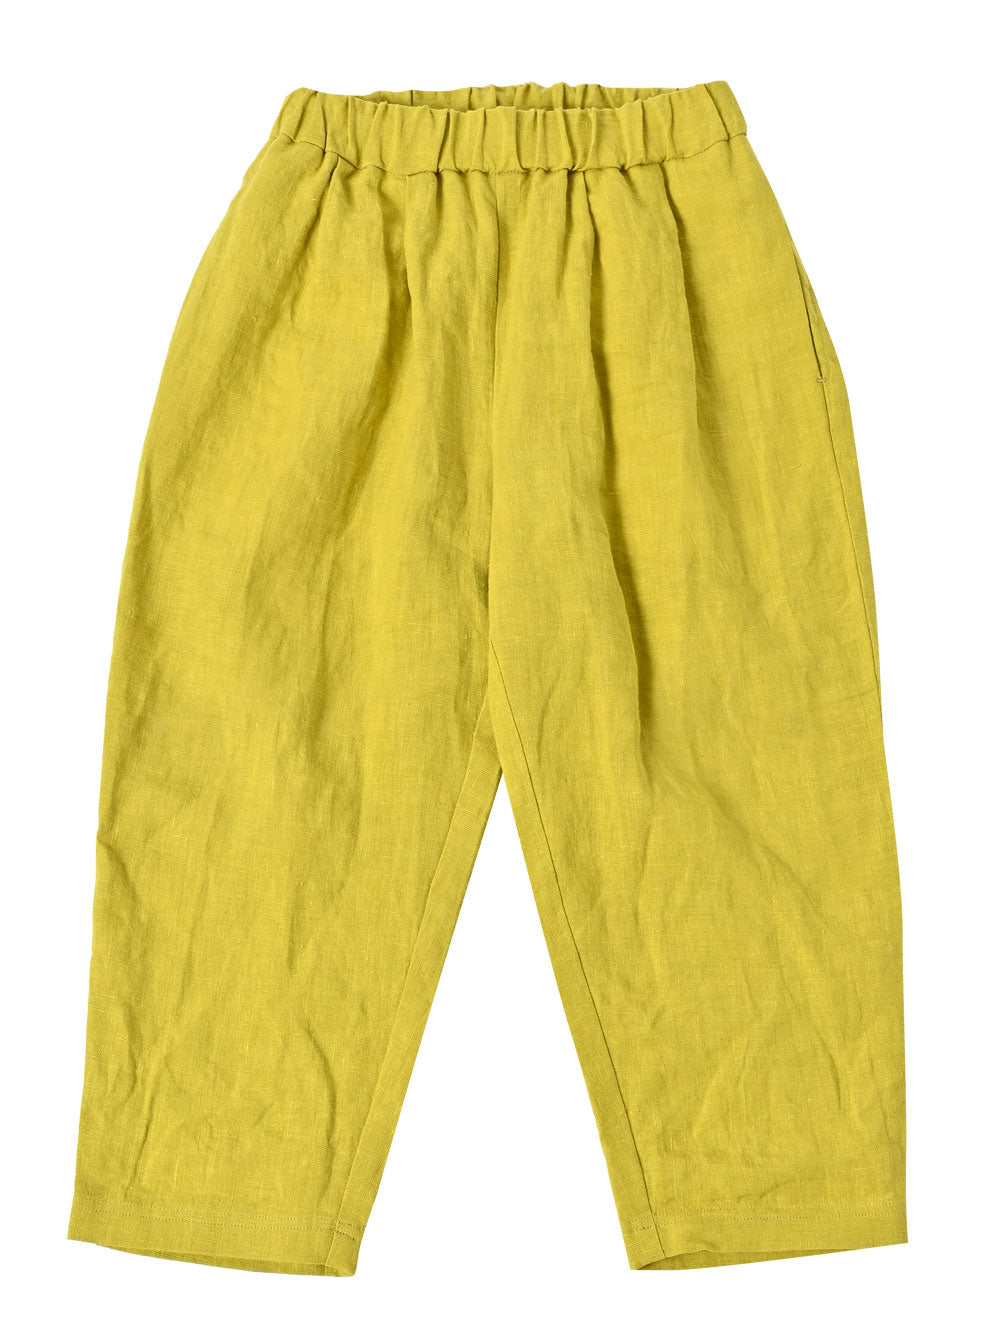 PREORDER: Saffron Yellow Pants